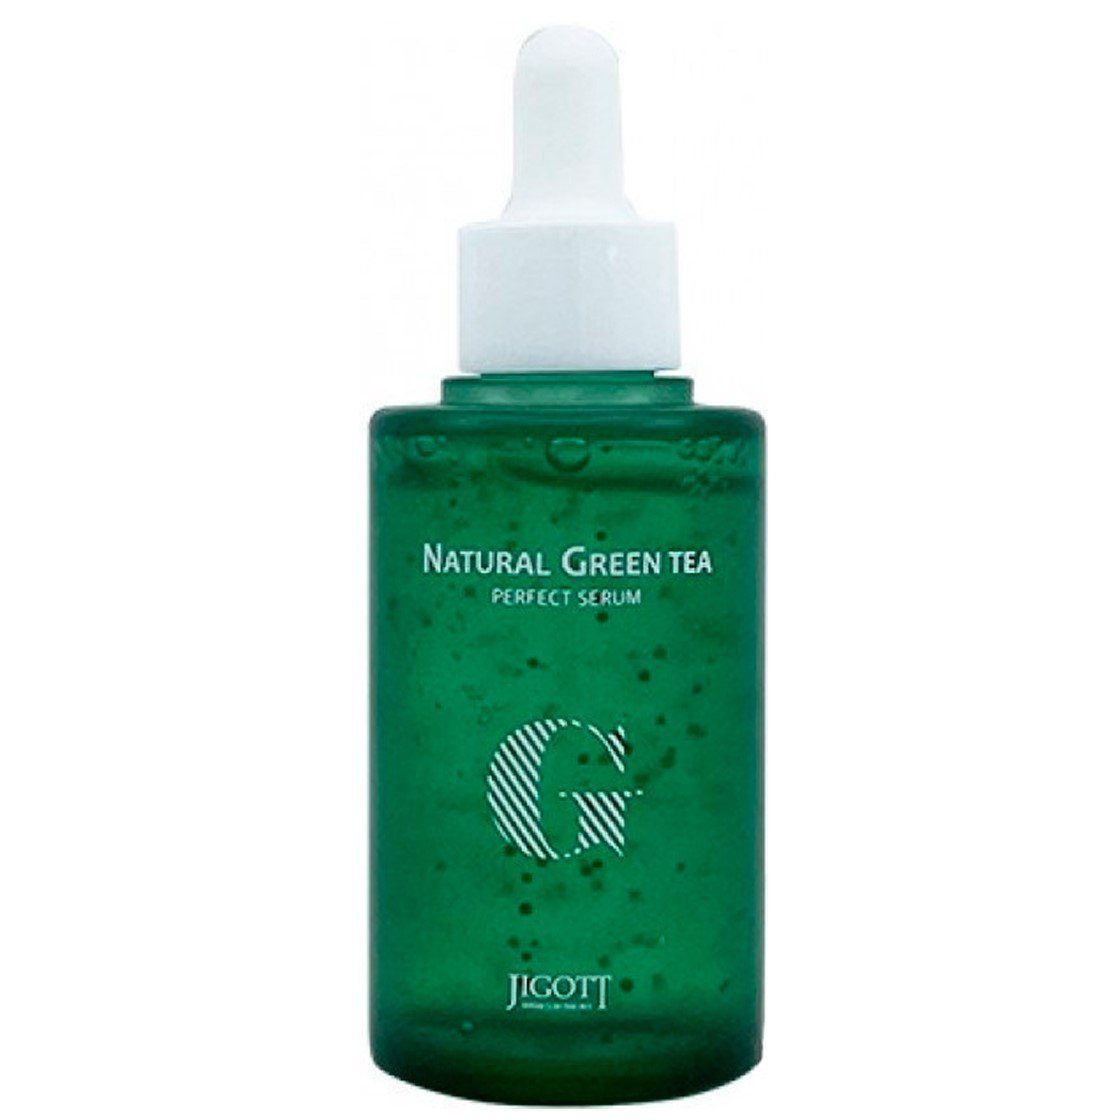 Сыворотка для лица Jigott Natural Green Tea Perfect Serum Зеленый чай, 50 мл - фото 1